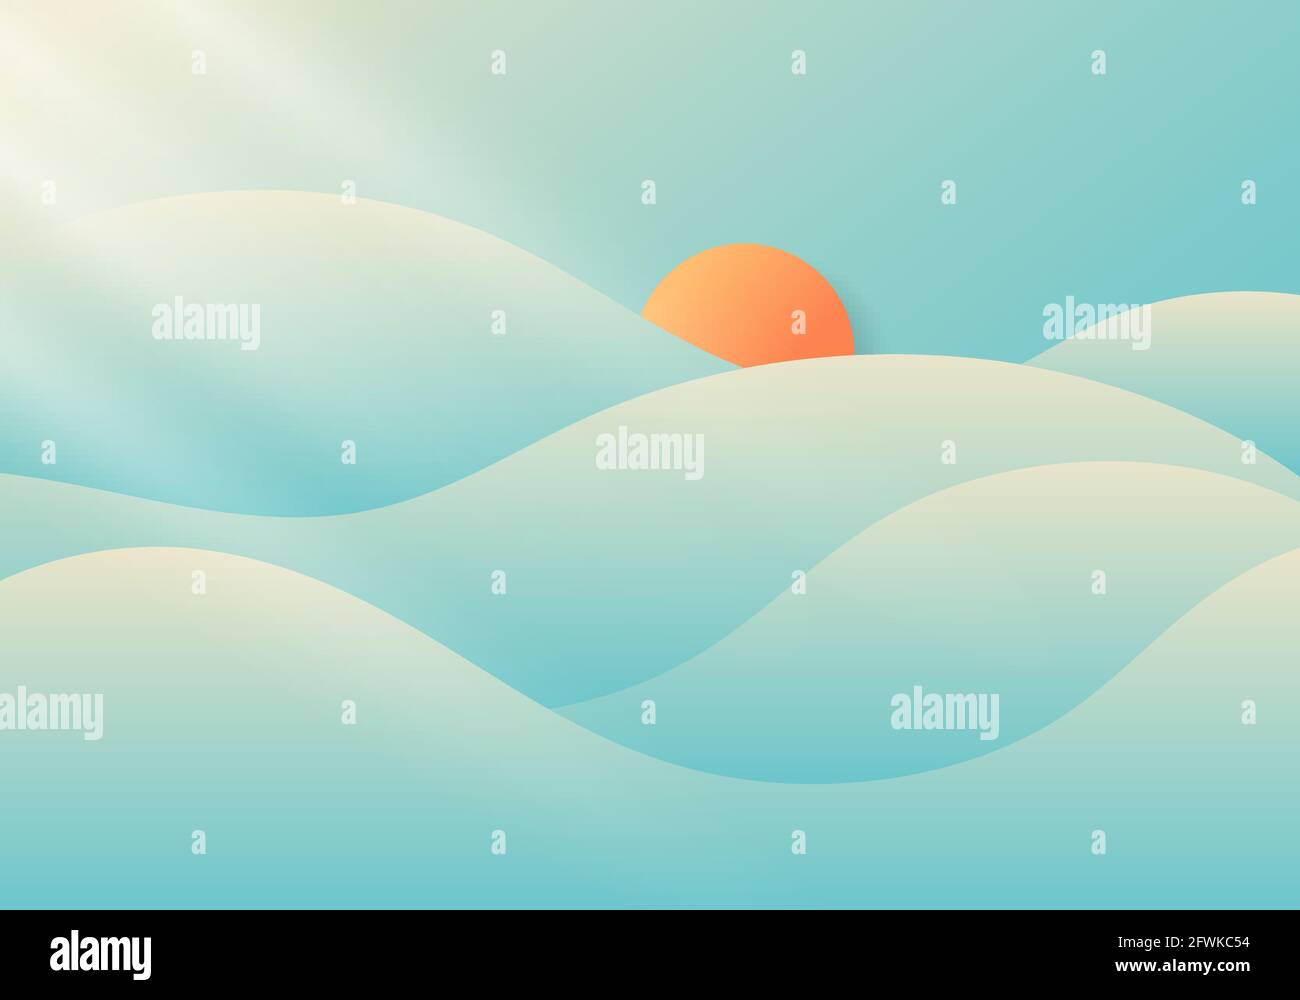 Été nuageux et brumeux avec lumière du soleil sur fond bleu ciel nature concept minimal. Illustration vectorielle Illustration de Vecteur